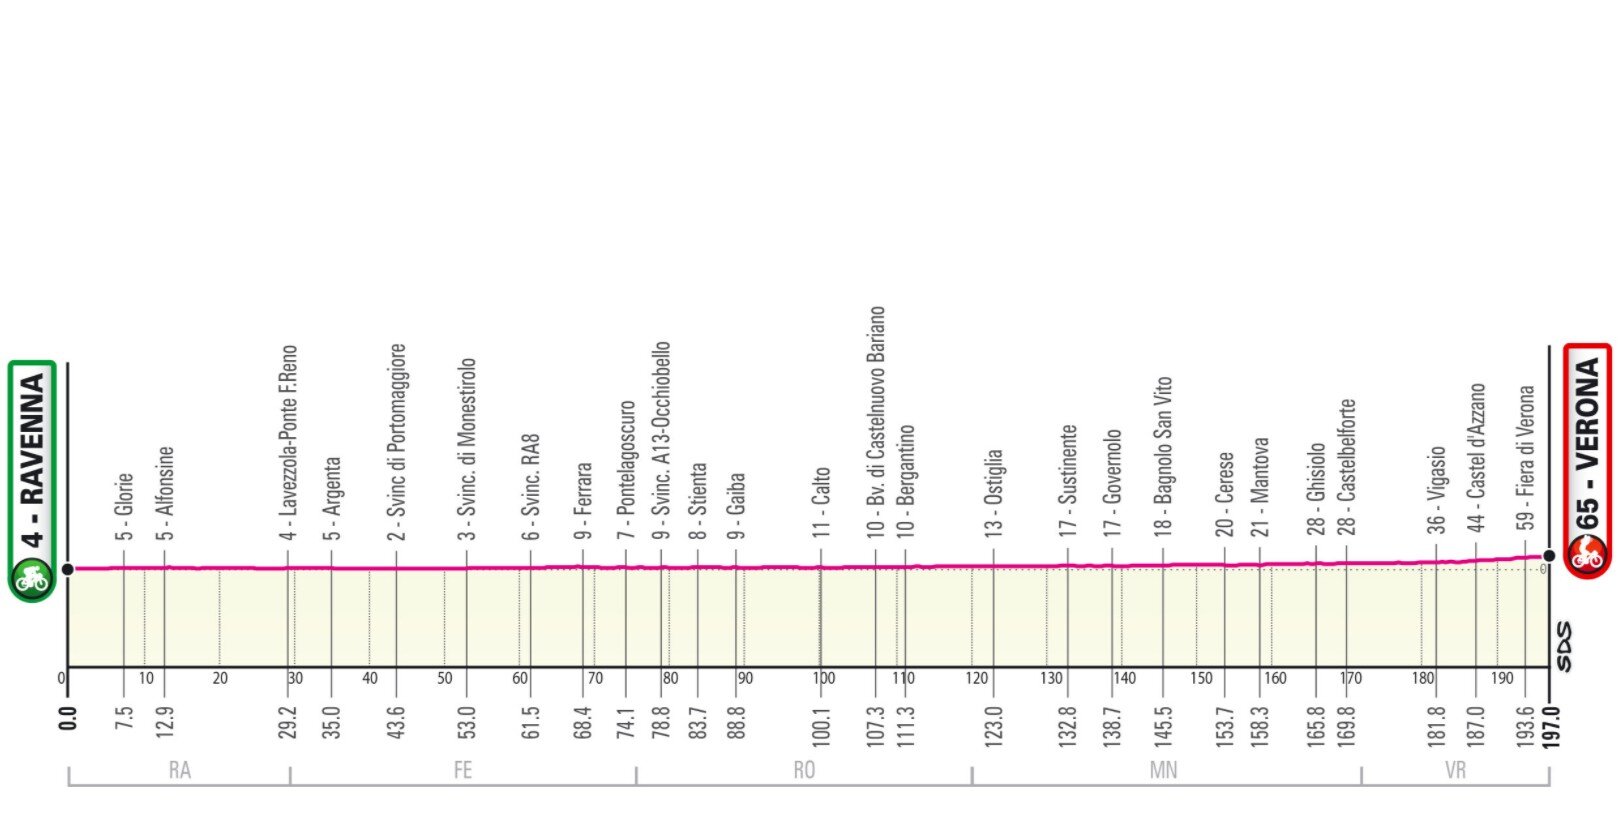 Stage 13 Giro Italia 2021